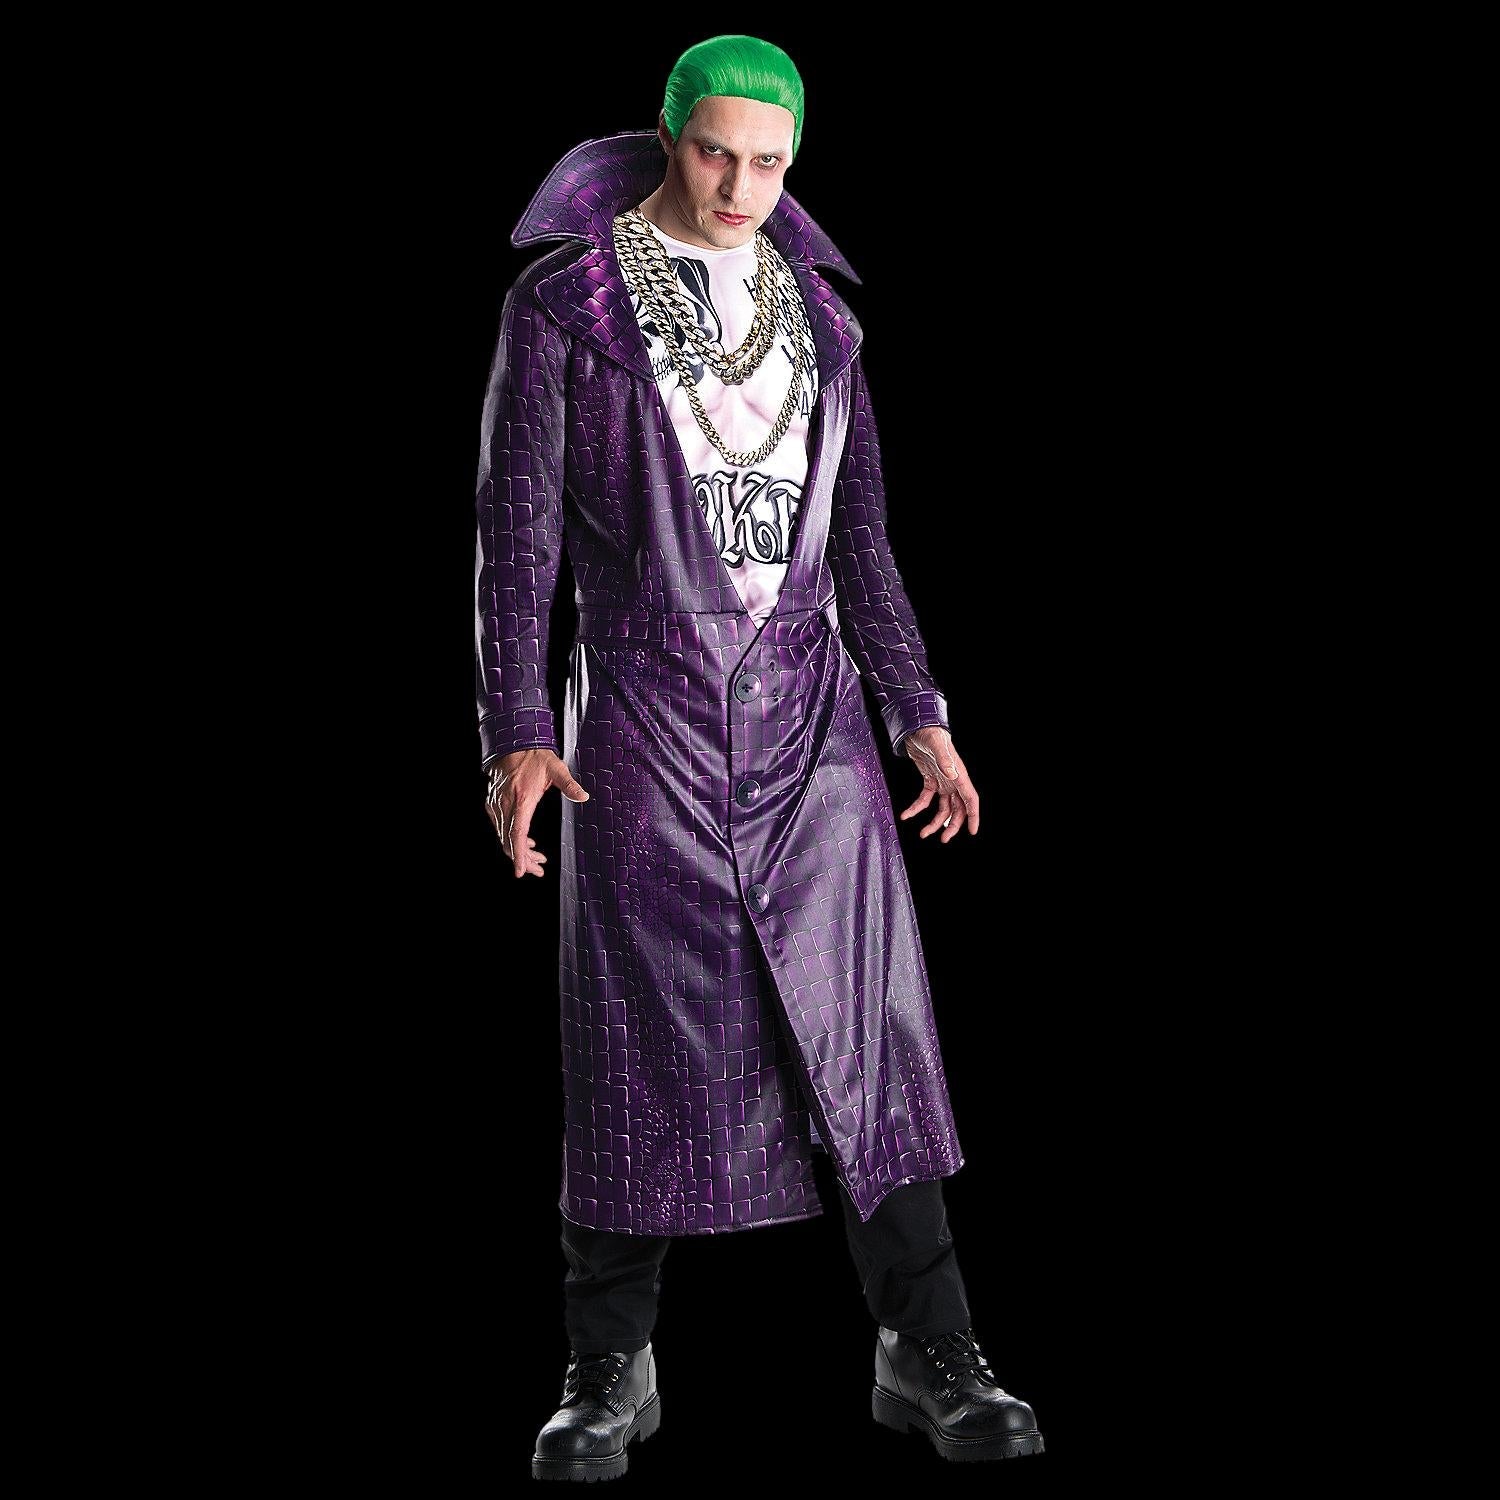 Joker Costume – The Horror Dome